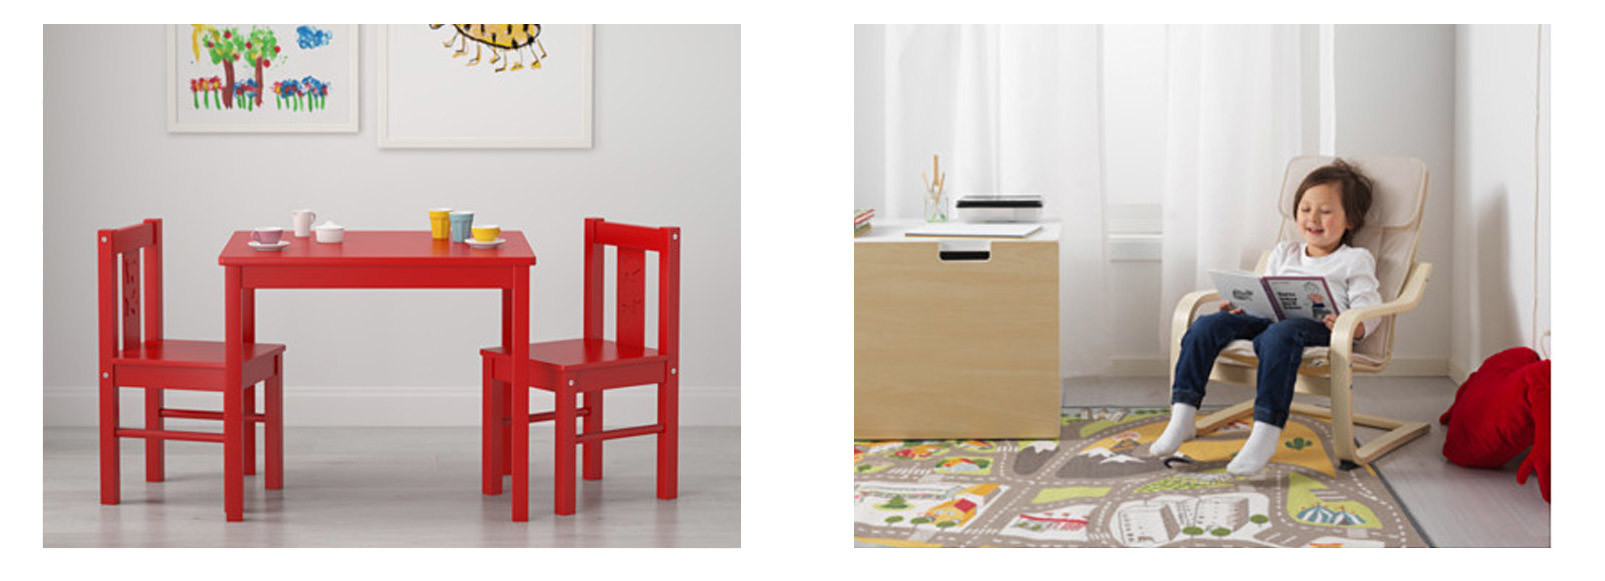 Примеры детской мебели из Икеа: стол, стулья и кресло